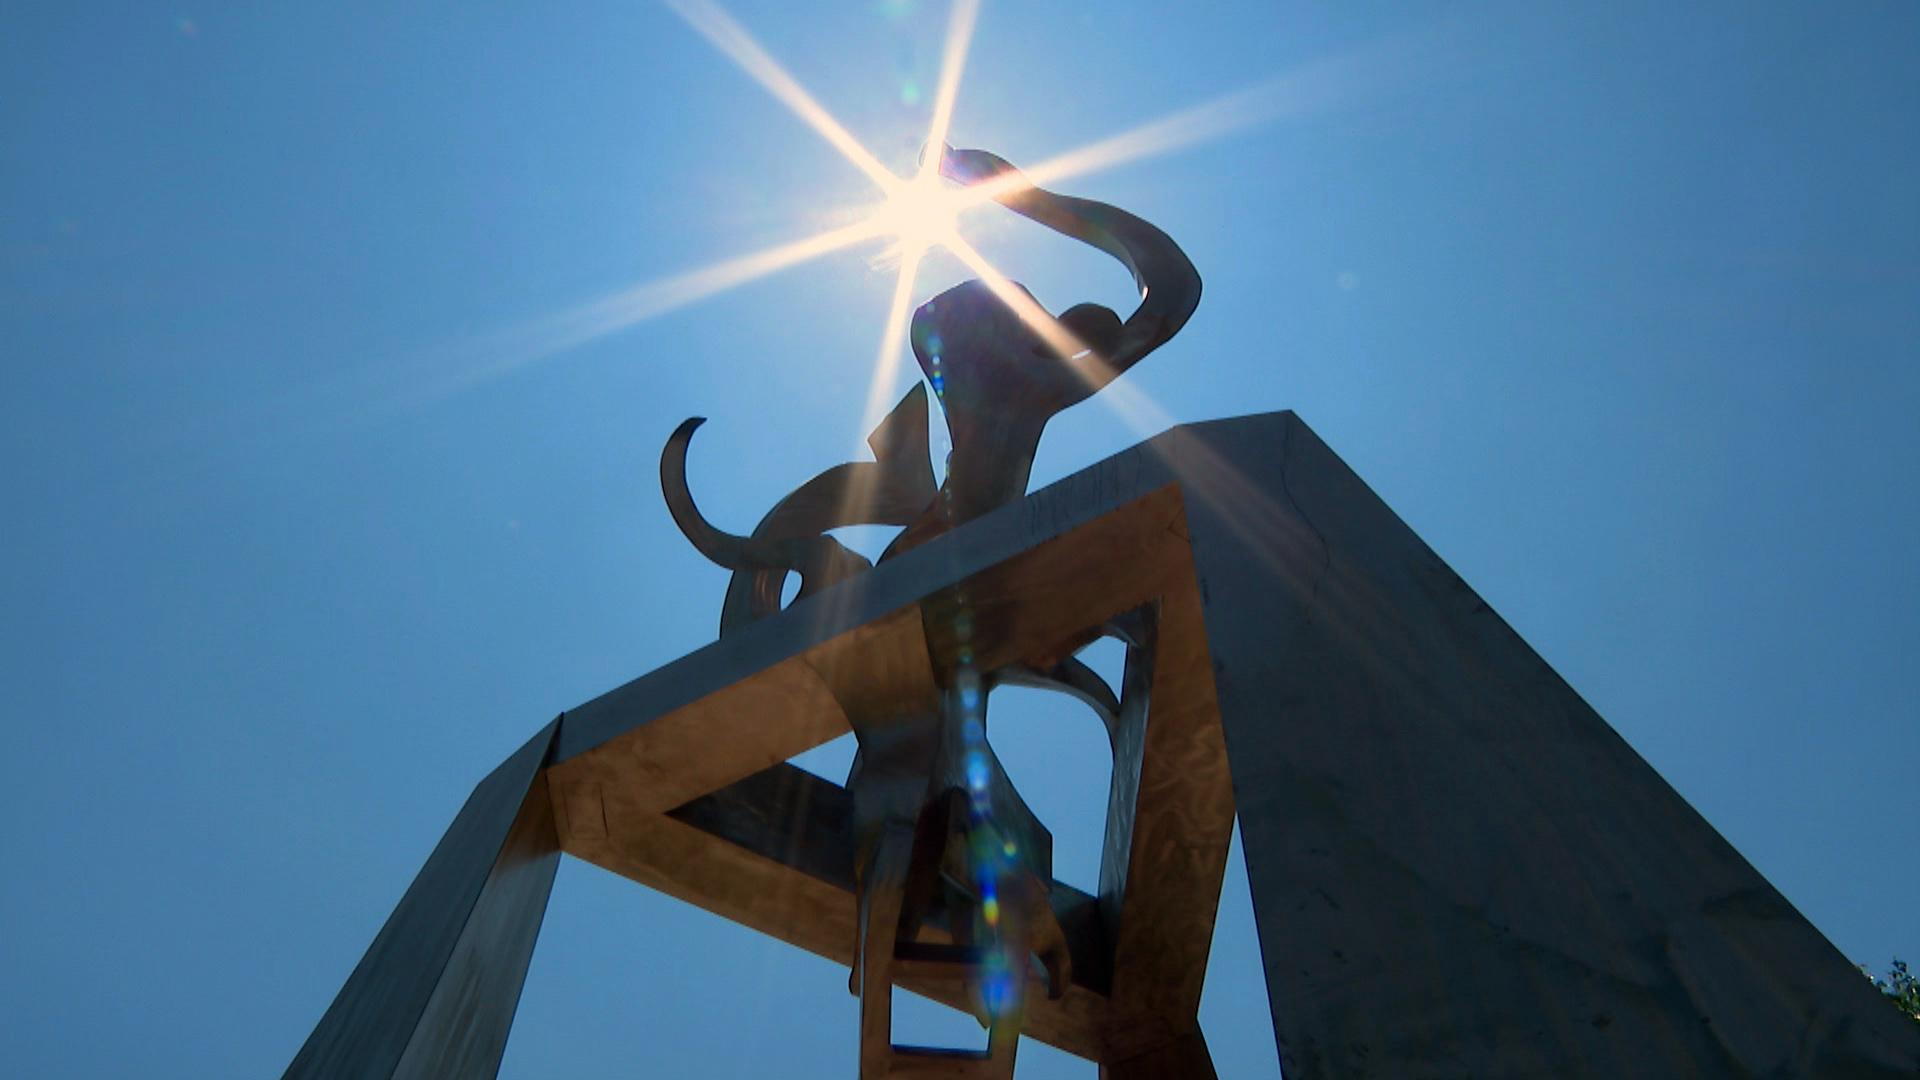 Richard Hunt’s sculpture “Light of Truth.” (WTTW News)